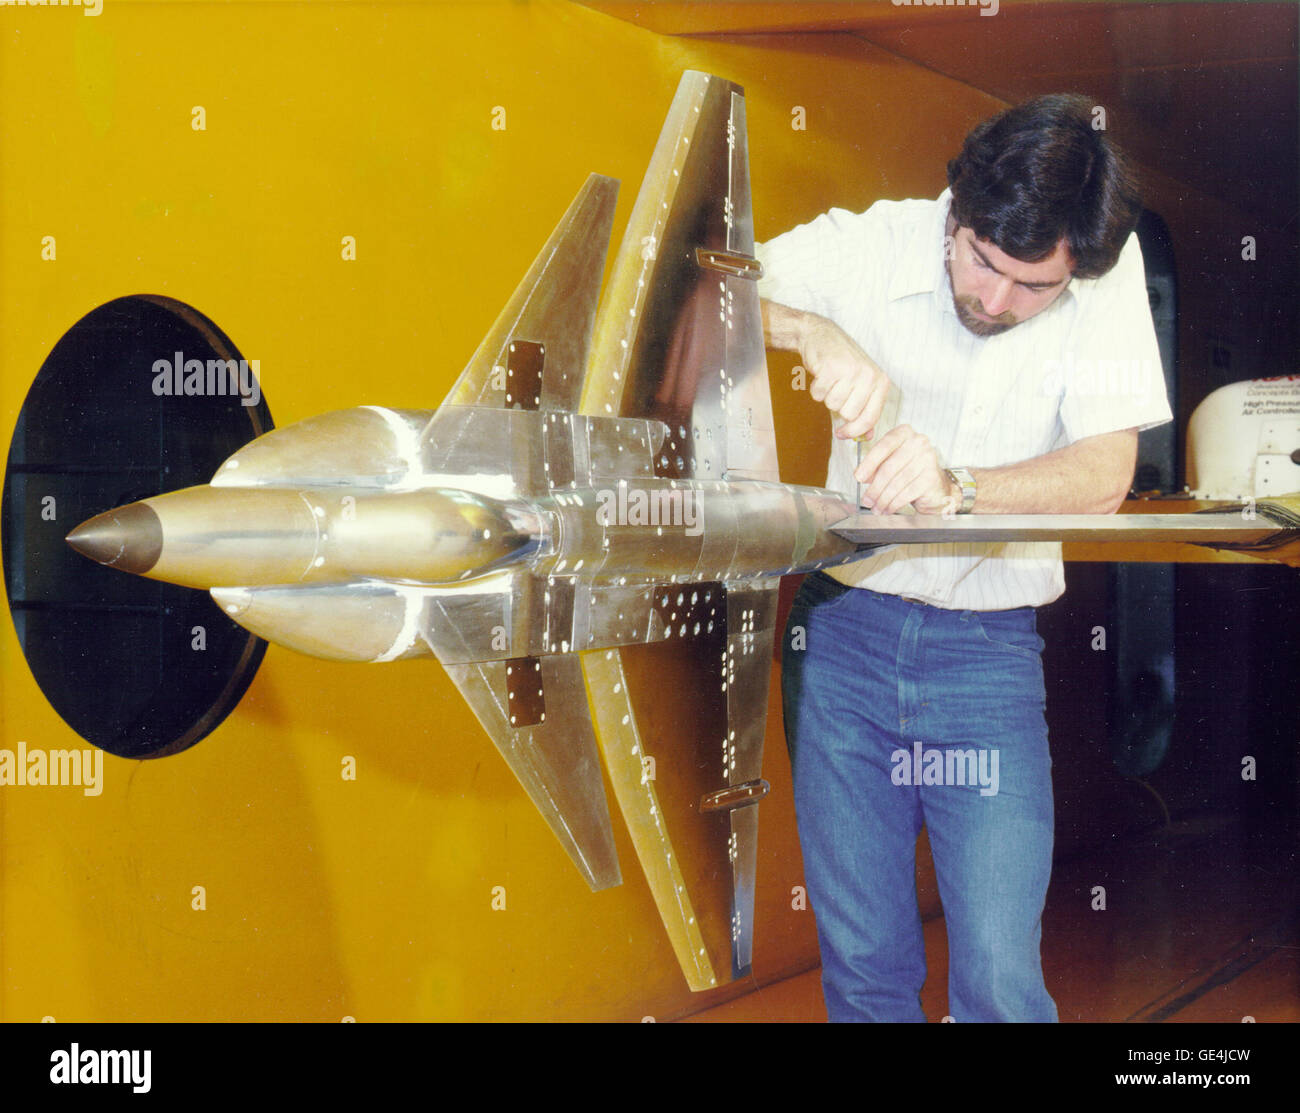 (1987) ingegnere Don Durston monta un McDonnell Douglas verticale breve decollo ed atterraggio (VSTOL) fighter modello a 9 x 7 piedi galleria del vento per il NASA Ames Research Center, Mountain View, California. Immagine # : AC87-0131-16 Foto Stock